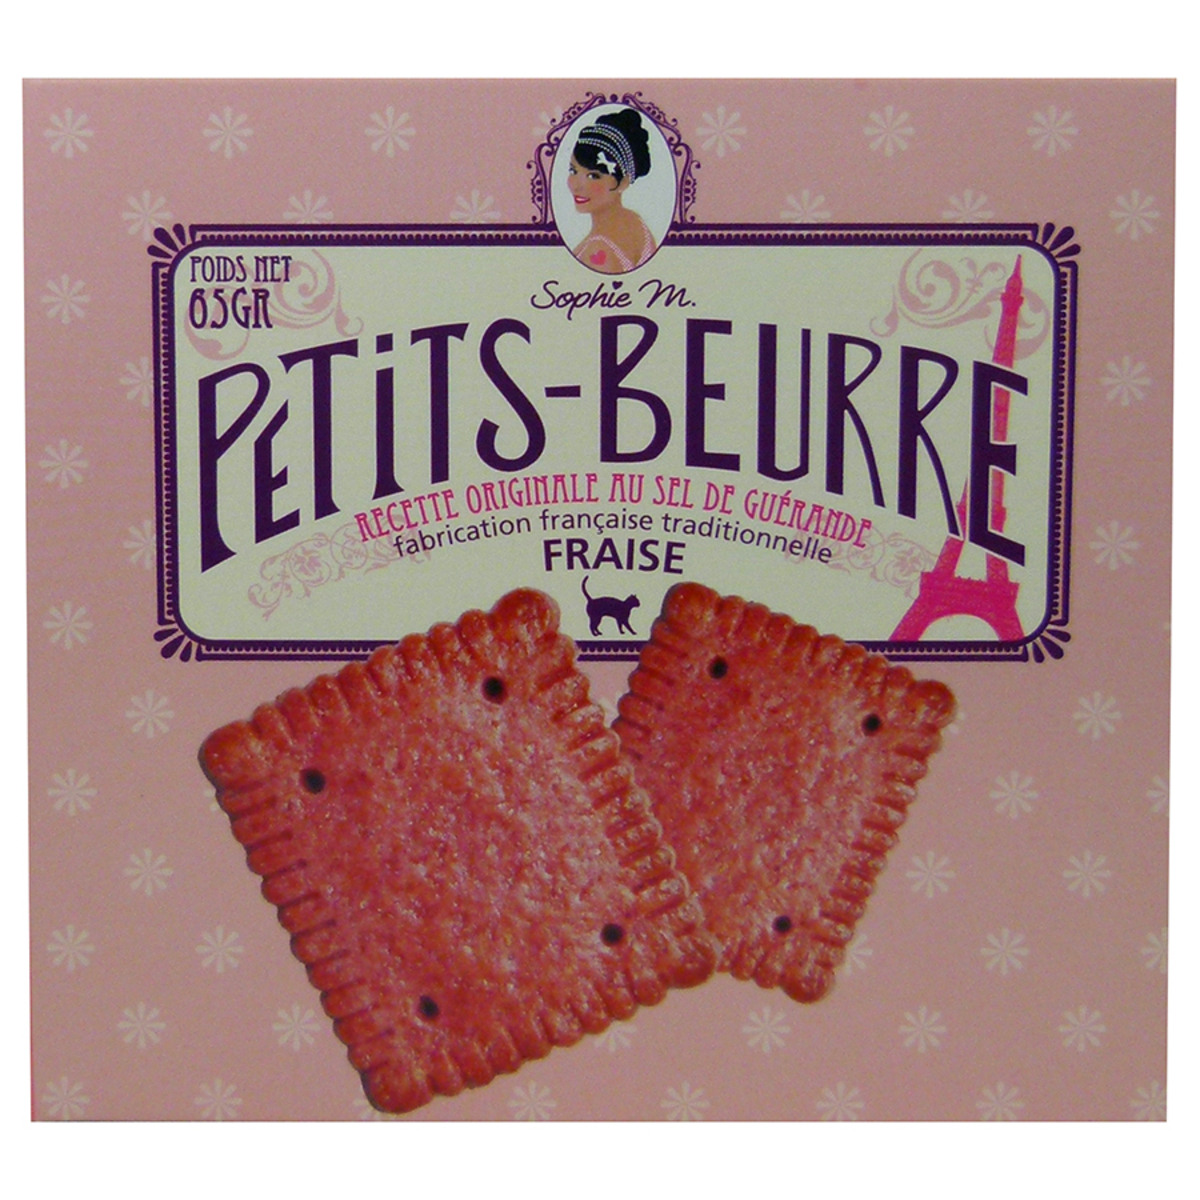 Petits Beurre à la fraise - Recette originale au sel de Guérande 65g